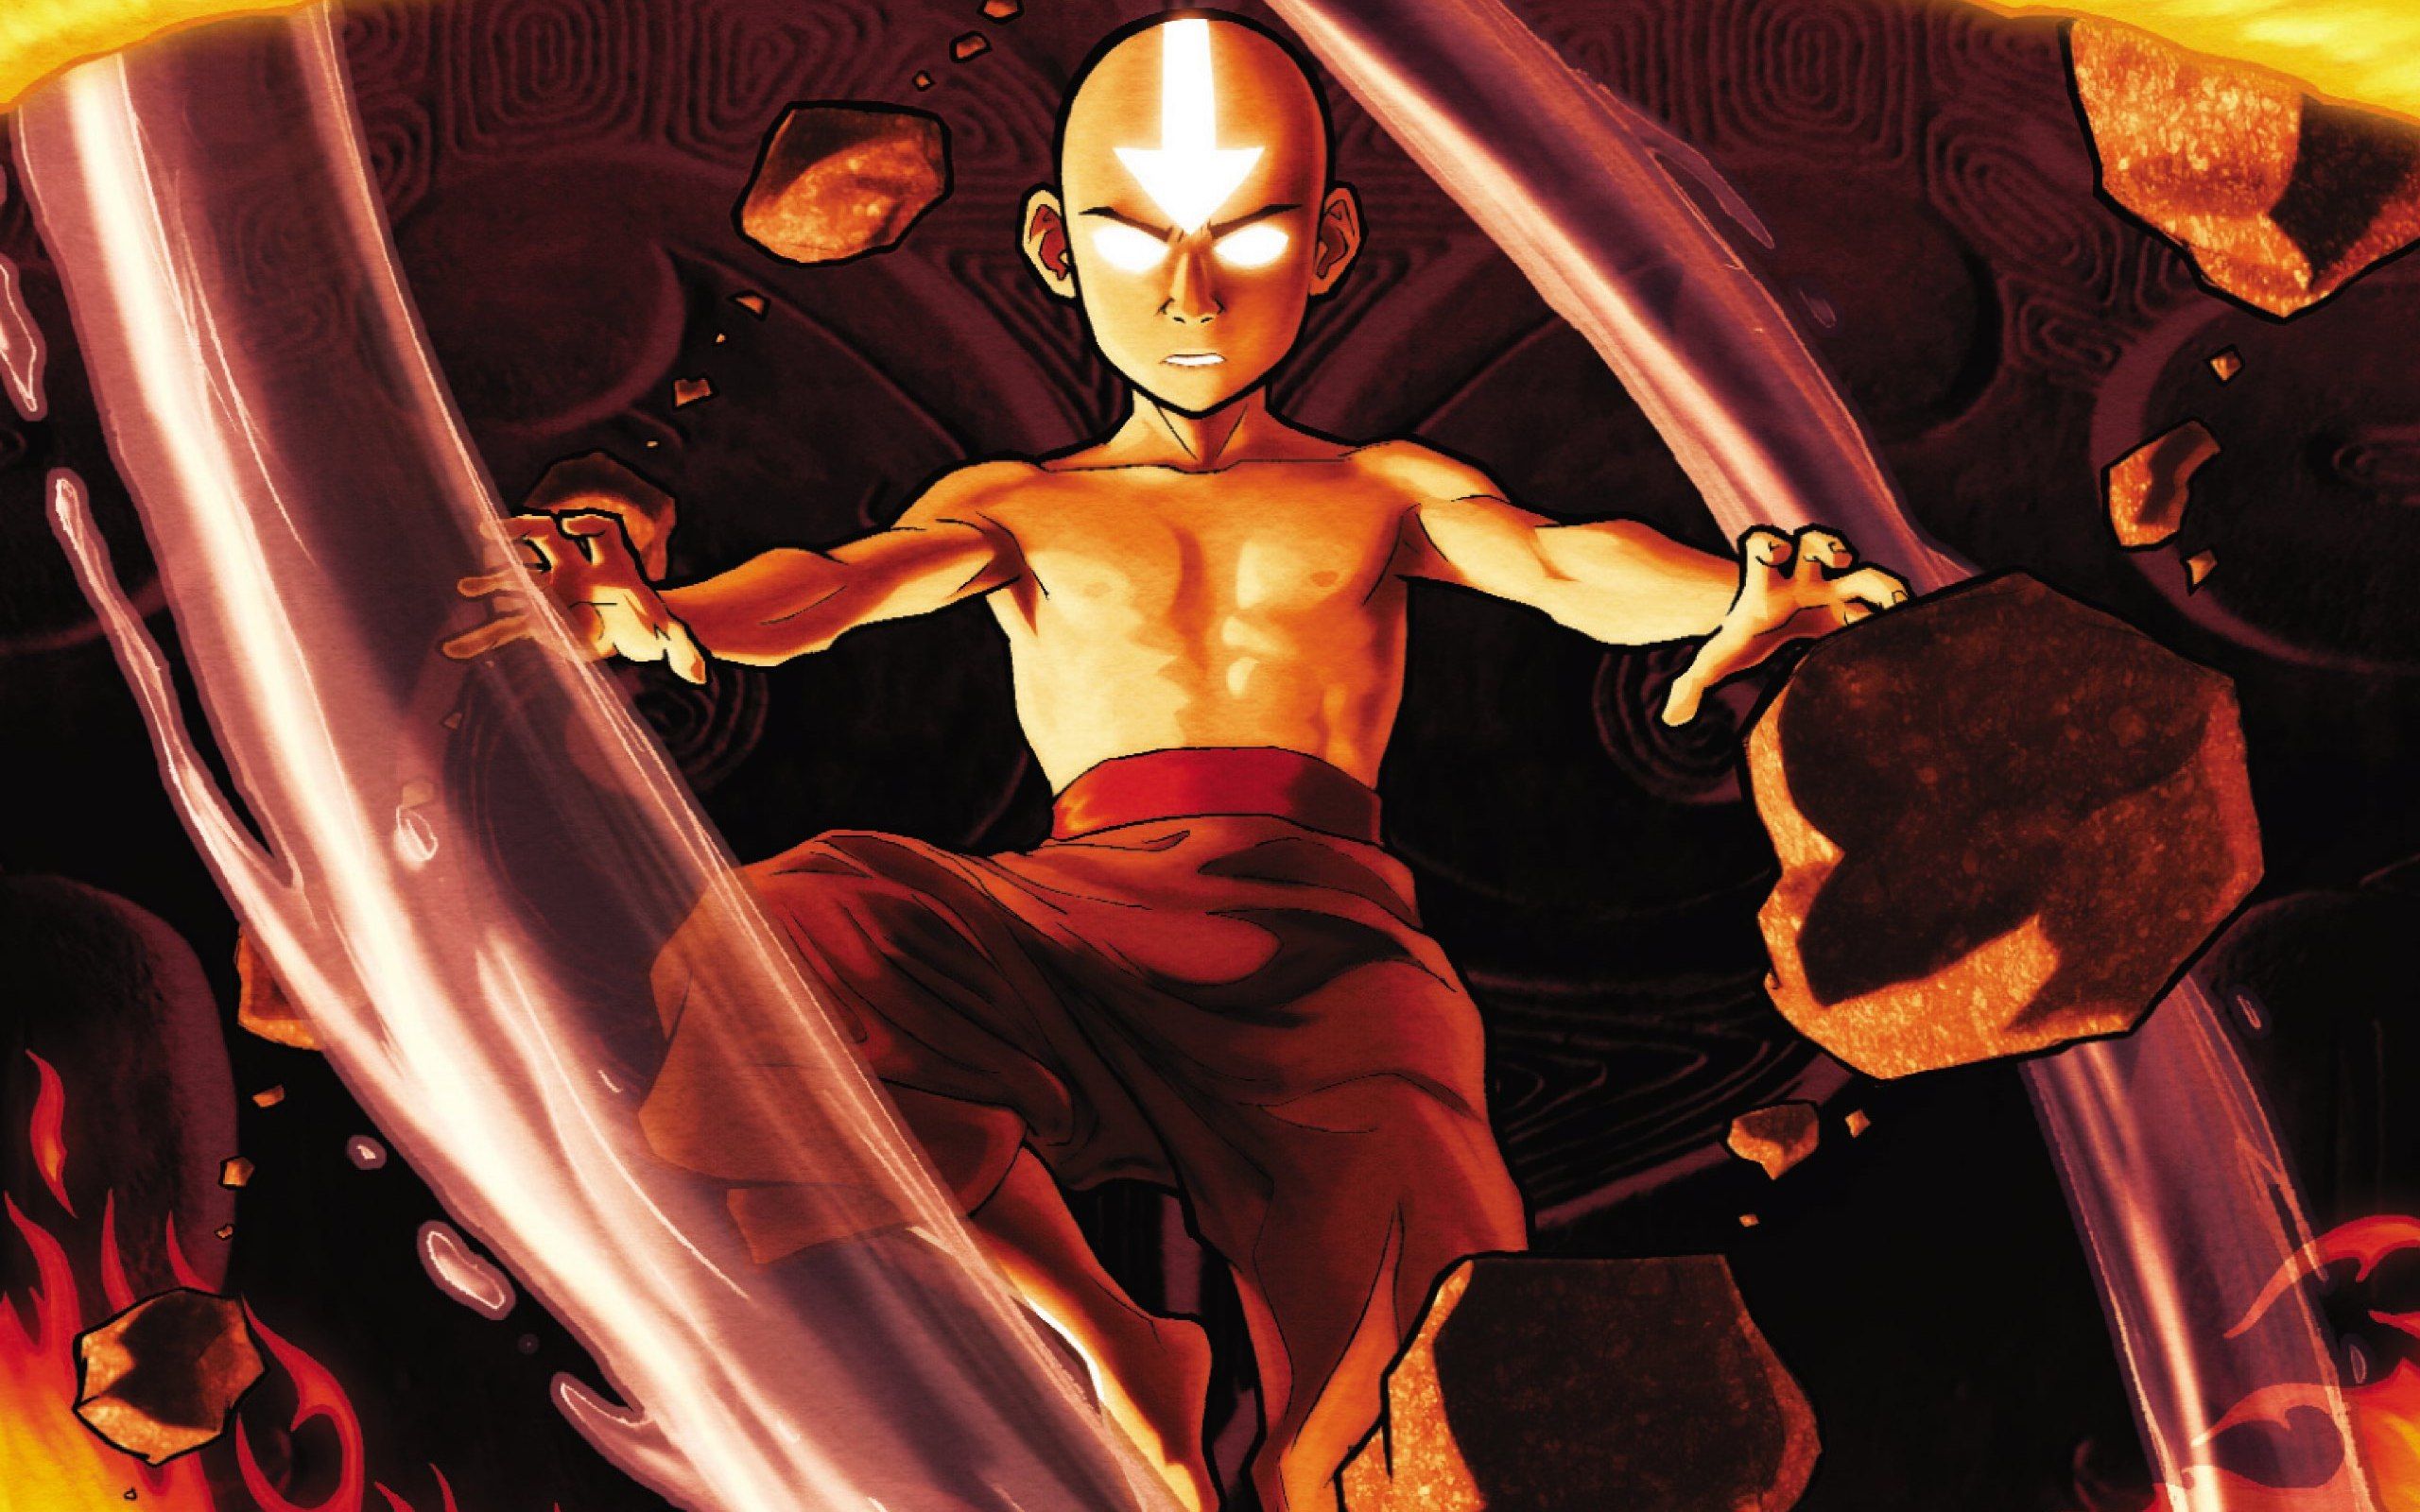 Avatar the legend of Aang wallpaperx1600